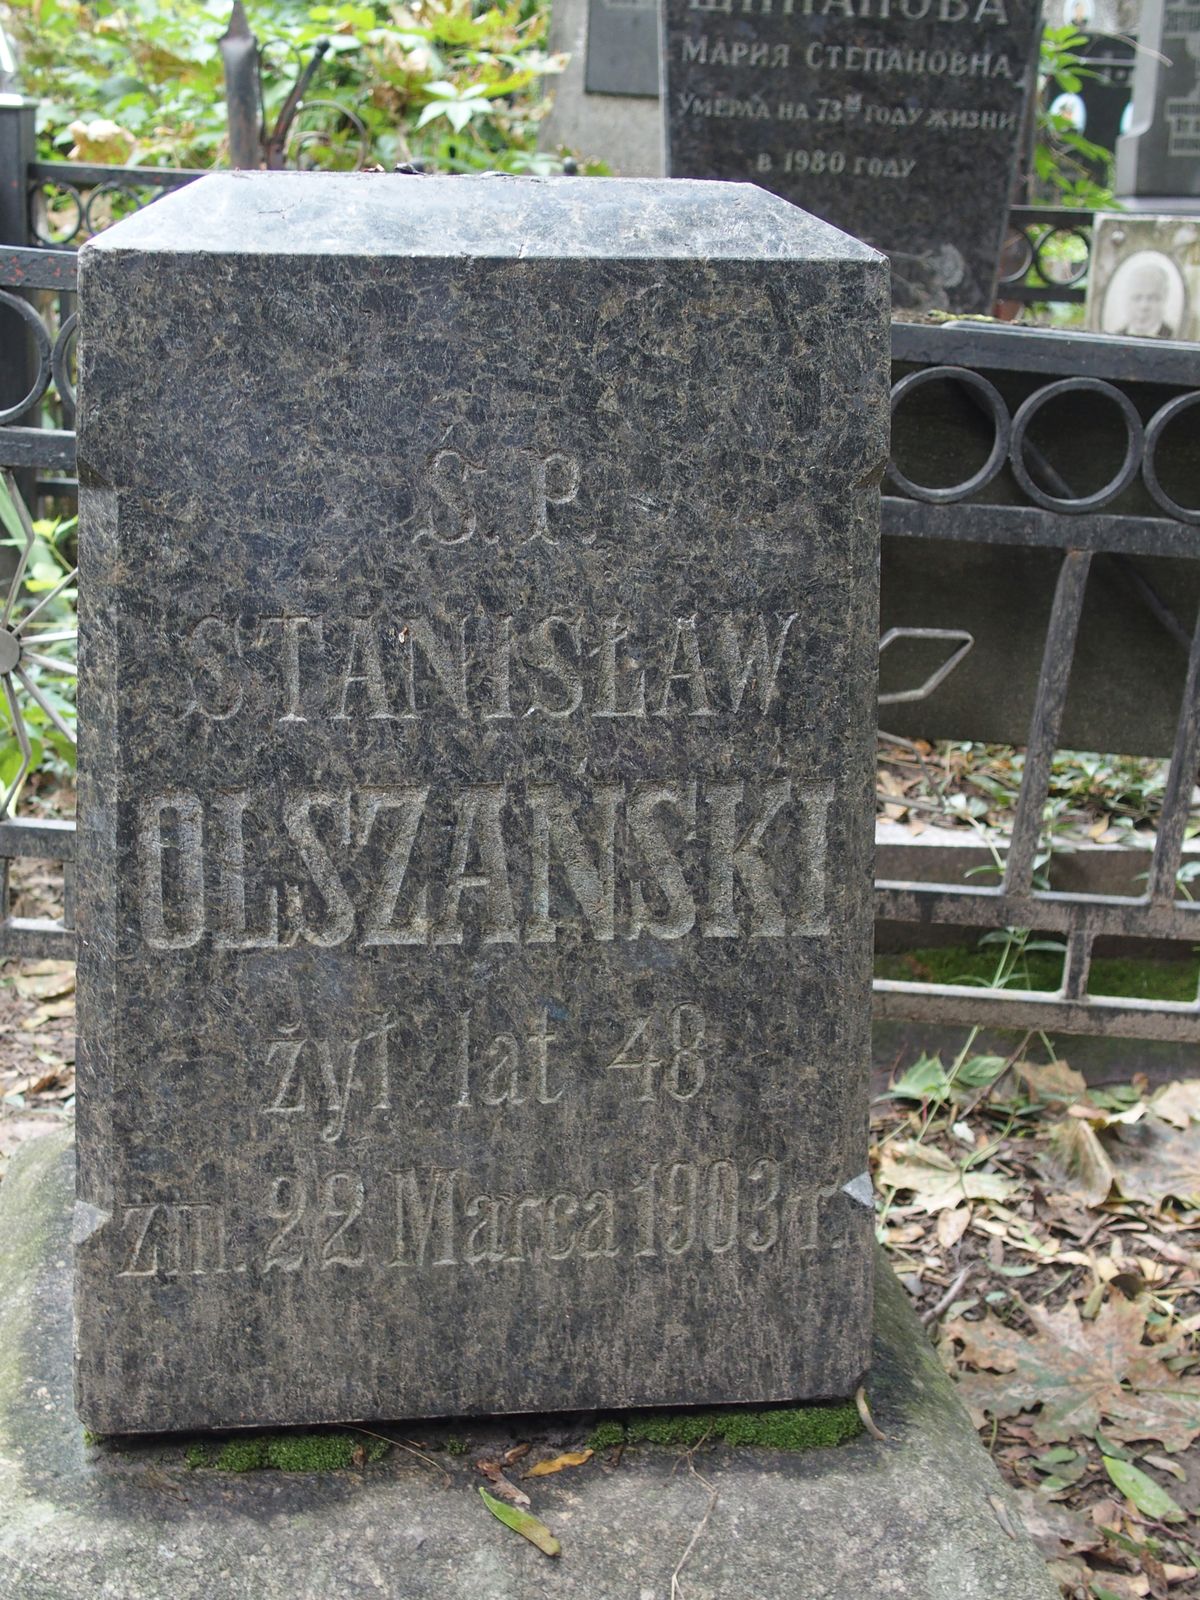 Napis z nagrobka Stanisława Olszańskiego, cmentarz Bajkowa w Kijowie, stan z 2021